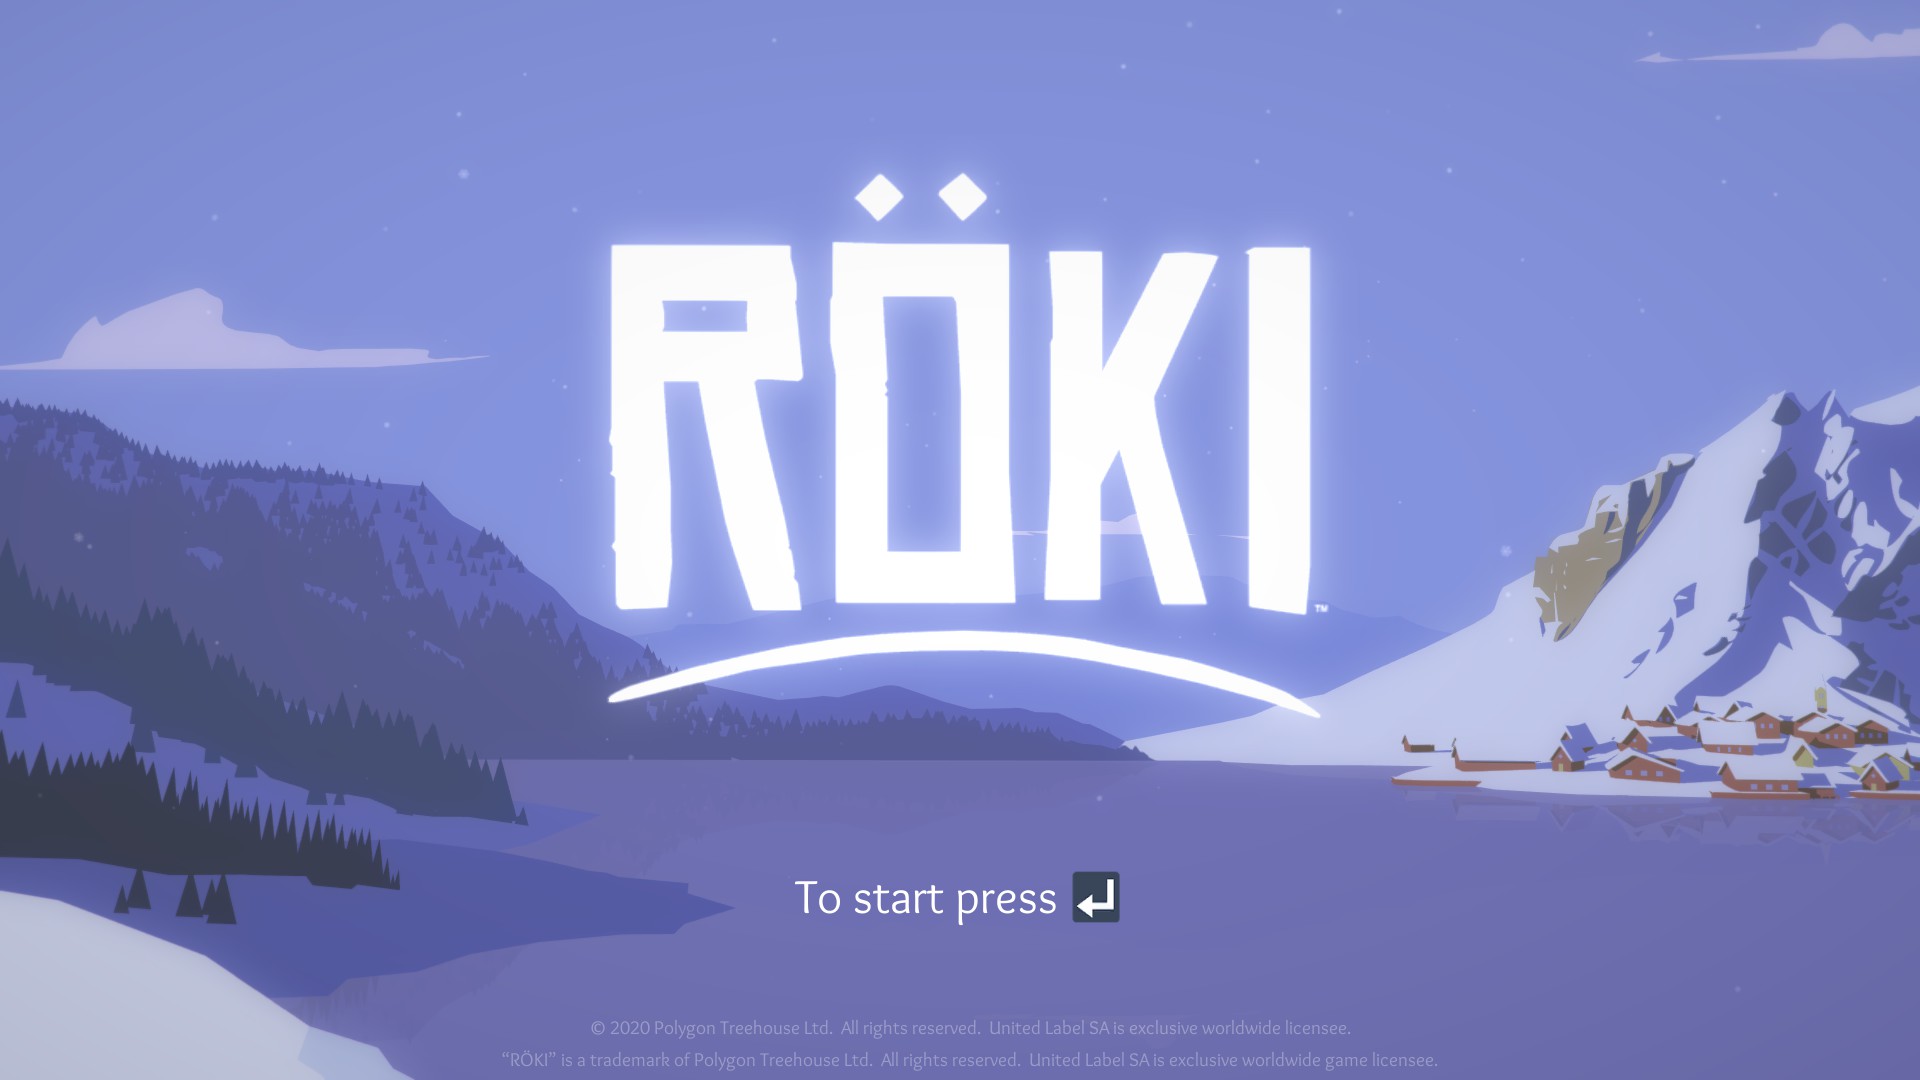 The word Röki across a landscape